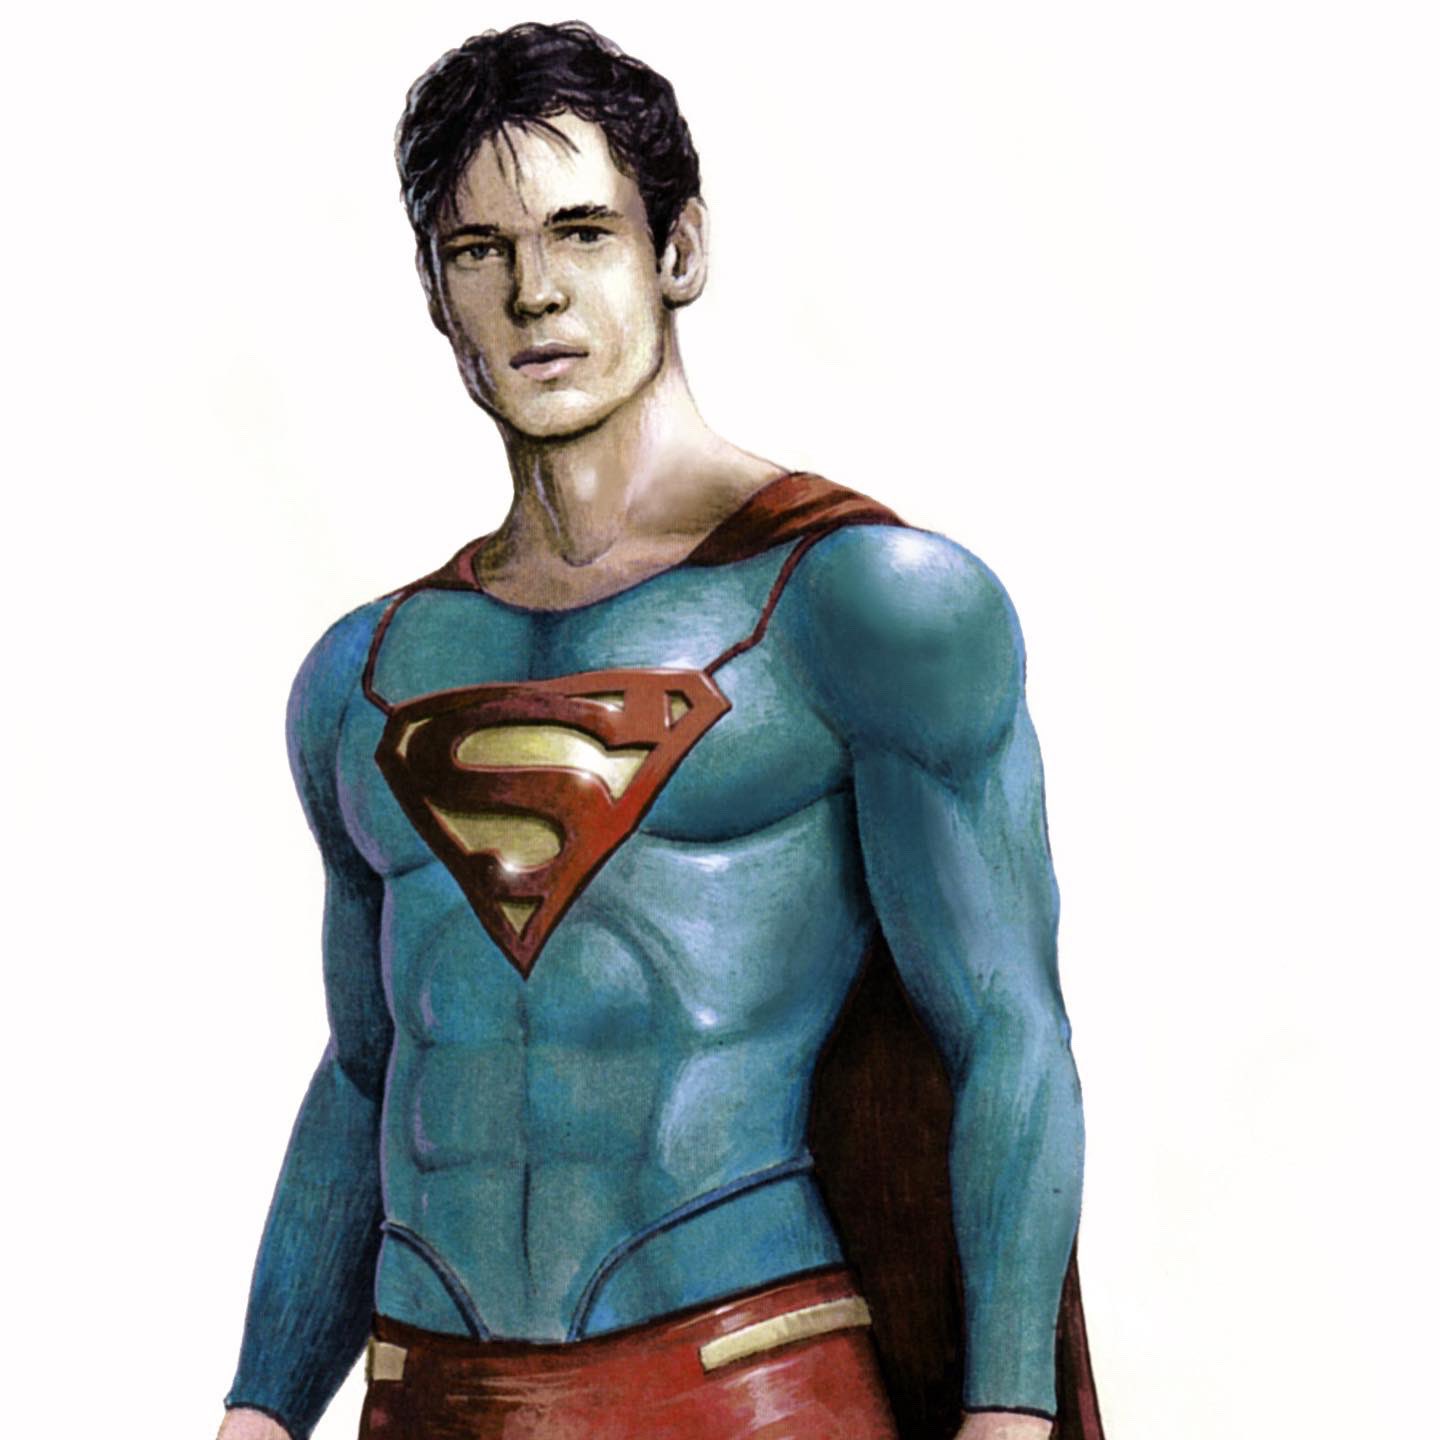 https://www.fortalezadelasoledad.com/imagenes/2022/04/22/superman_flyby_concept_art_1.jpg